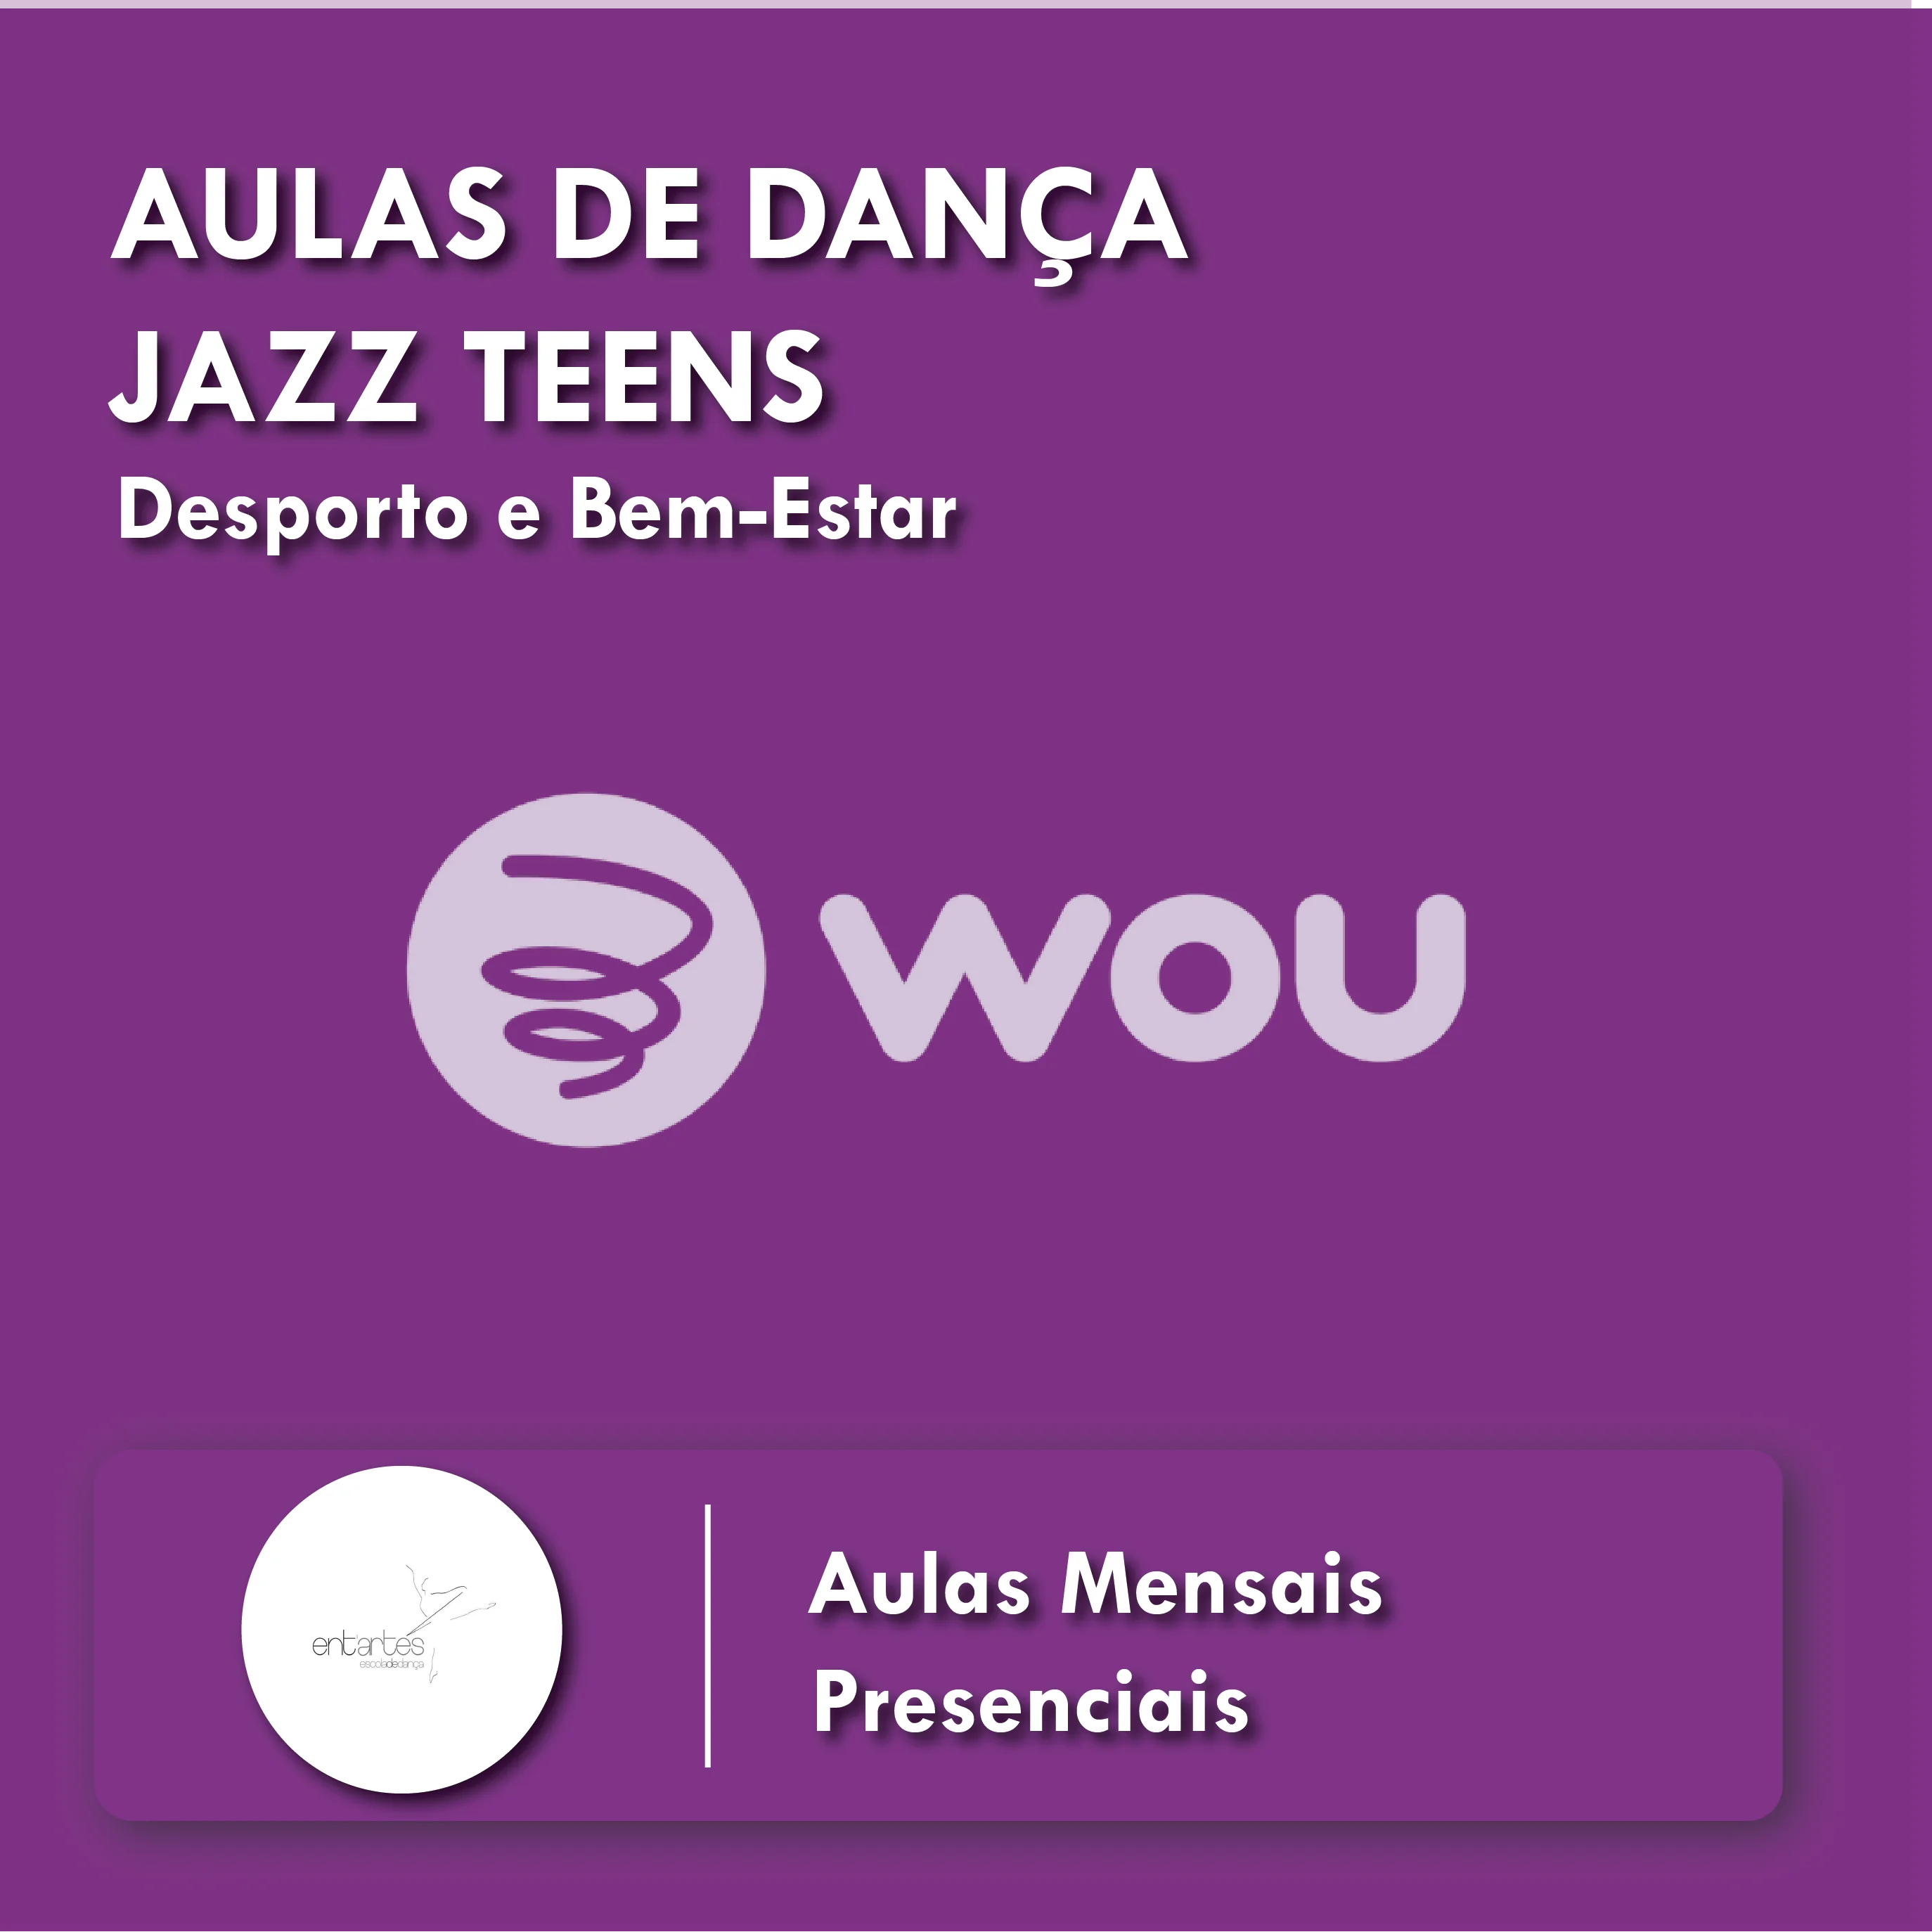 Aulas de Dança Jazz Teens em Braga